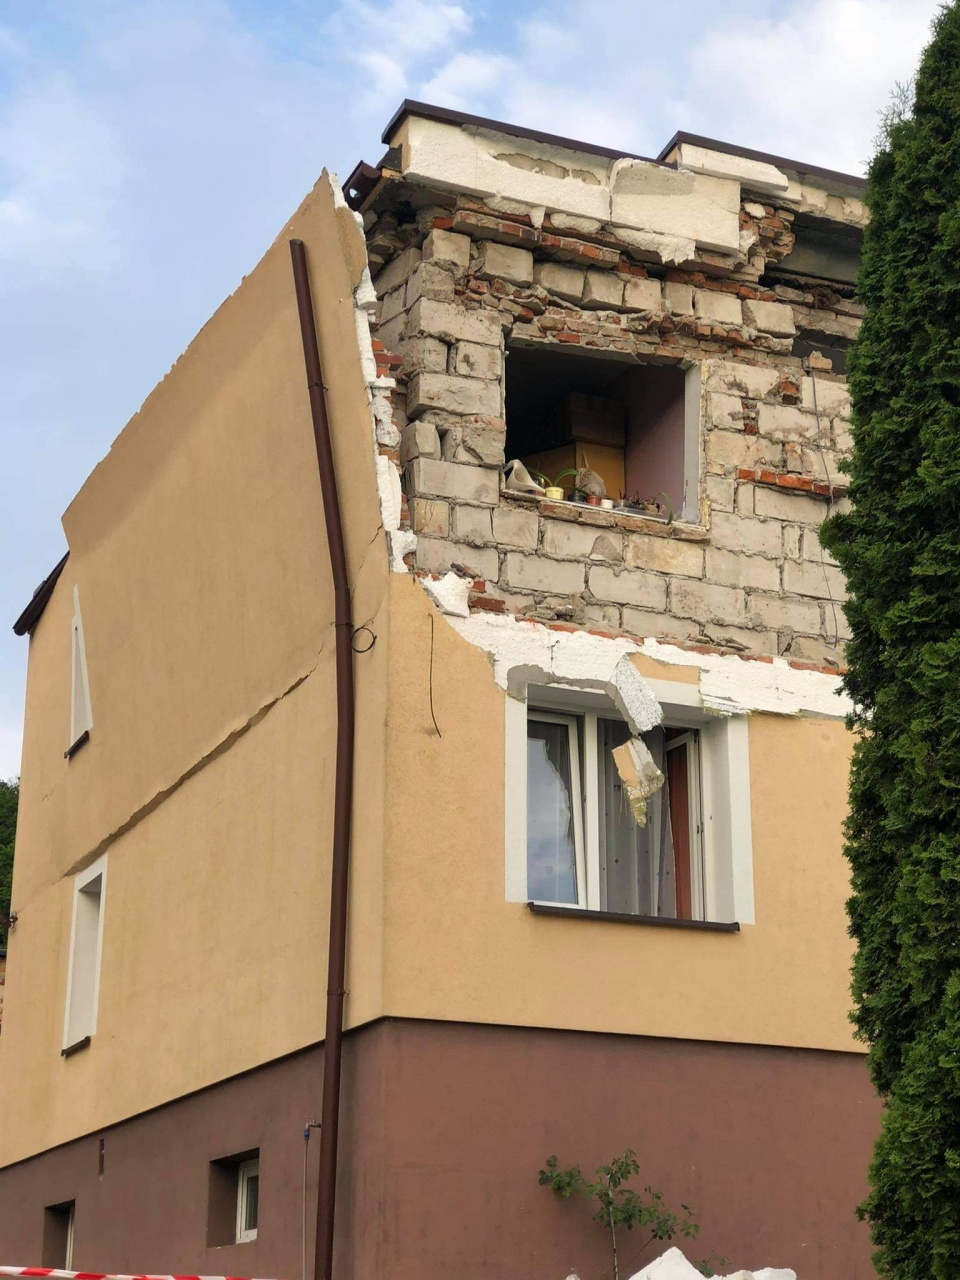 Wybuch w domu we wsi Mozgowina. Jedna osoba z czterech przebywających wewnątrz została poszkodowana./fot. Bydgoszcz 998